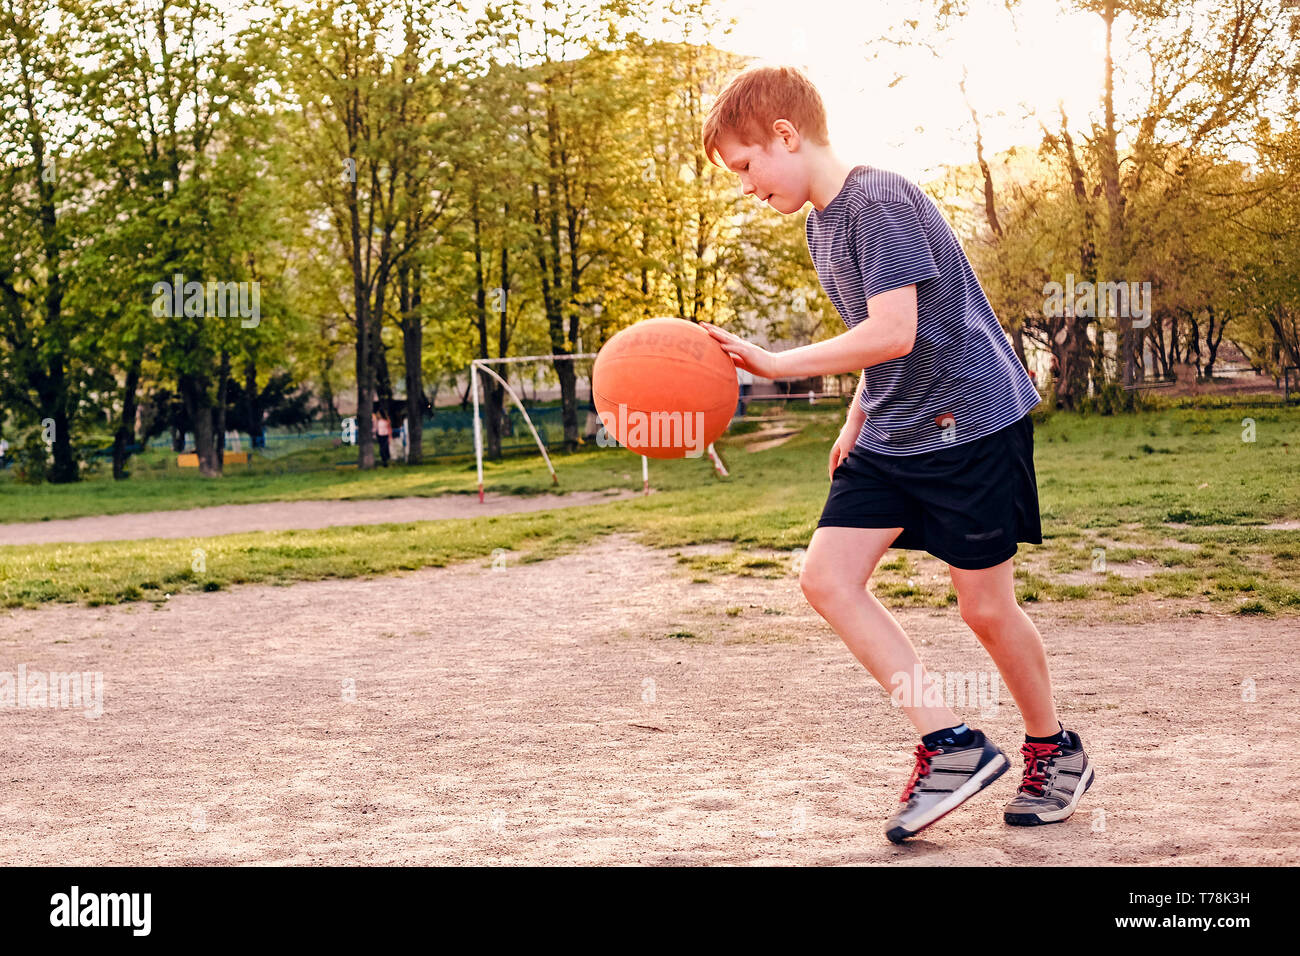 Happy Young boy pratiquant le basket-ball rebondir la balle alors qu'il tourne sur un terrain de sport au début du printemps par rétro-éclairé une lueur chaude du Soleil Banque D'Images